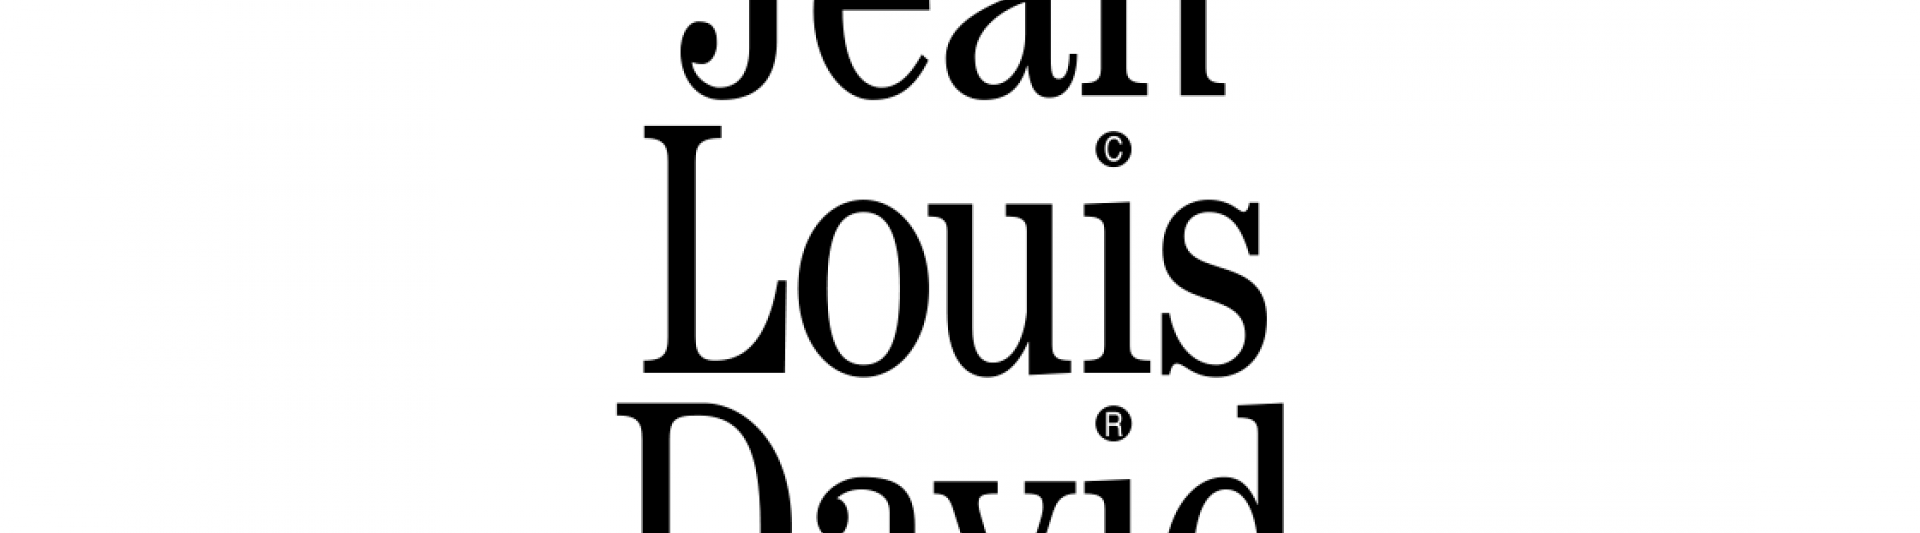 Jean Louis David 